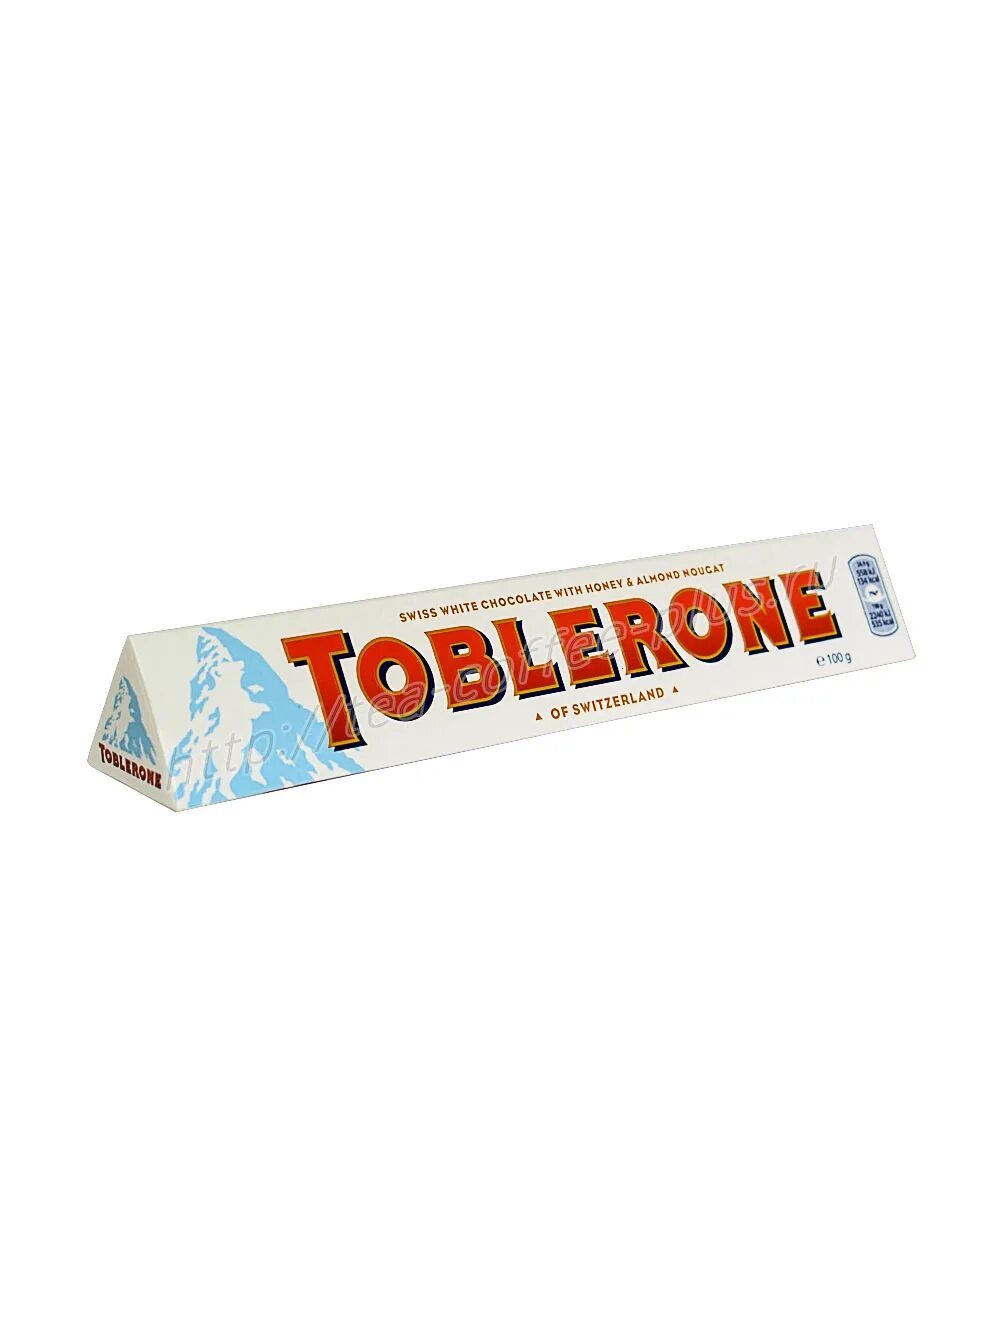 Шоколад Toblerone белый 100 г. Шоколад "Toblerone" 100г. Шоколад в треугольной упаковке Toblerone. Треугольная шоколадка Toblerone. Шоколад toblerone купить